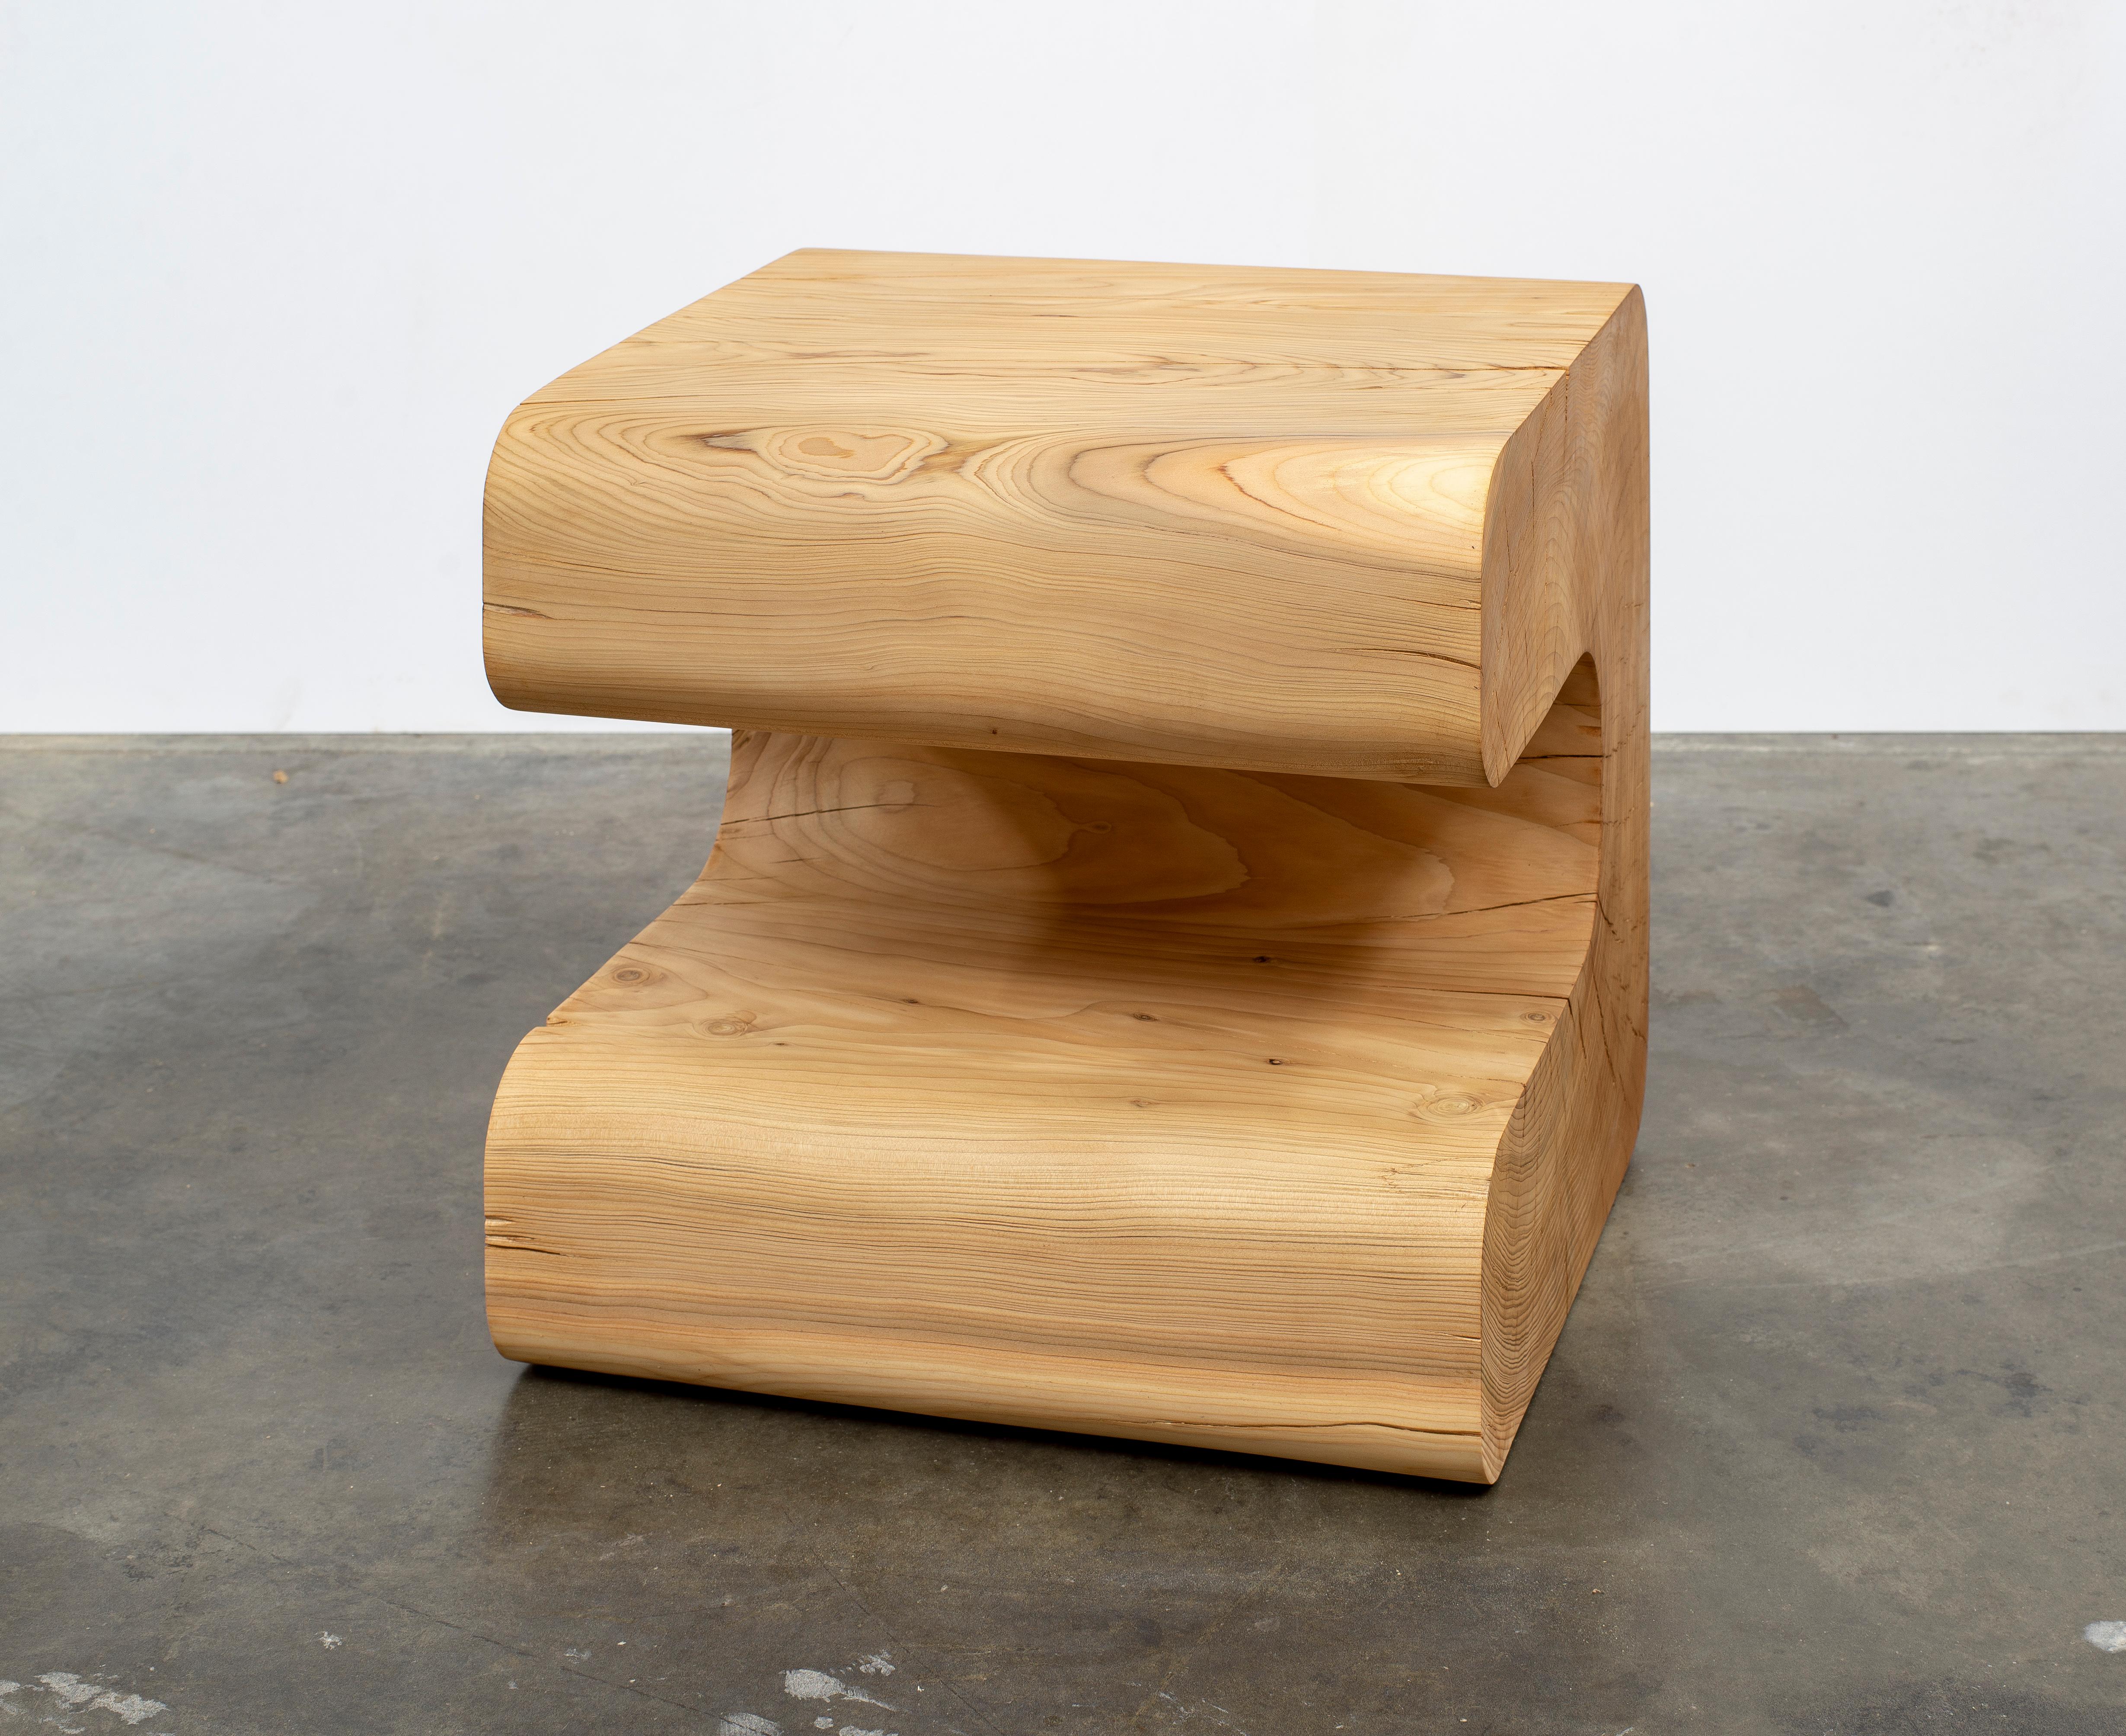 Cette série de l'artiste Christopher Norman, basé à Los Angeles, explore les caractéristiques des formes moulées exécutées dans des bois exceptionnels. La masse et l'échelle des courbes sont inhabituelles tout en étant très compréhensibles. Dans